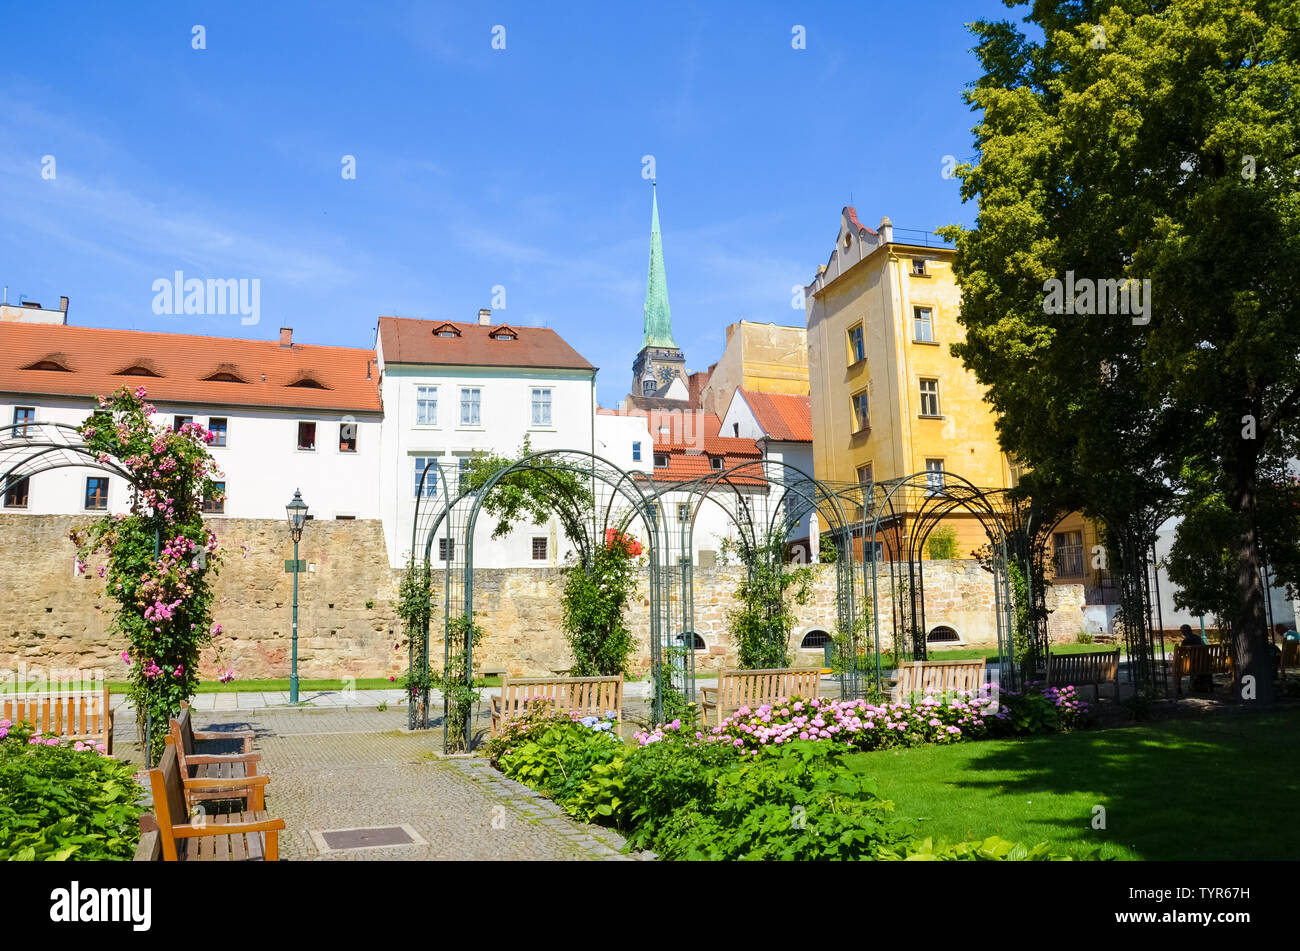 Les bâtiments historiques dans le centre-ville avec la Cathédrale de Saint Barthélémy photographiés de green park adjacent dans Krizikovy sady, Pilsen, République tchèque. Plzen, dans l'ouest de la Bohême. Banque D'Images